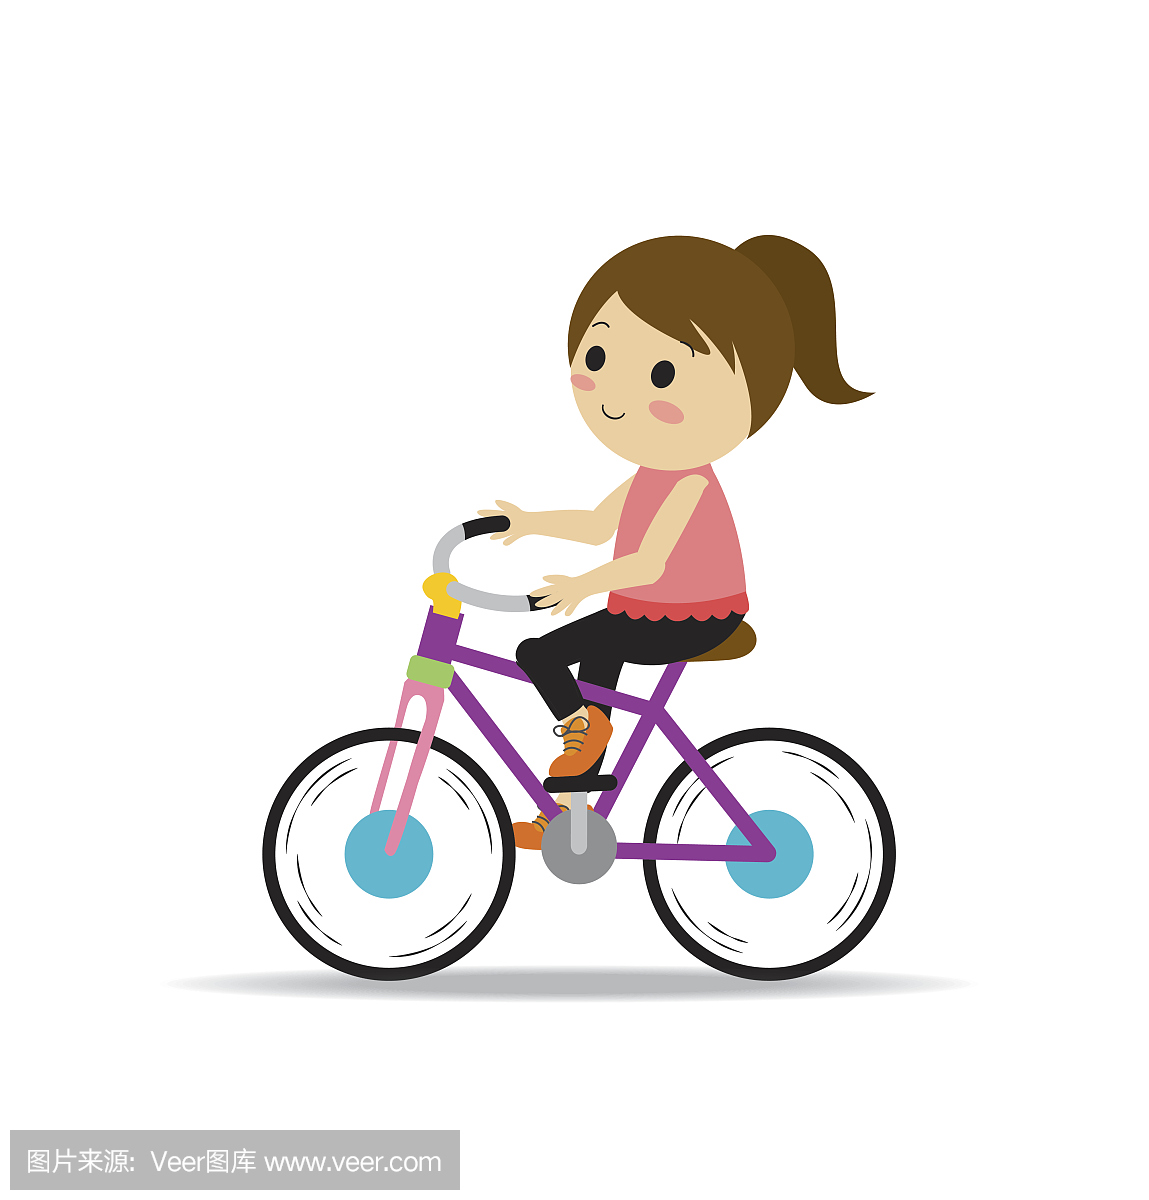 รูปทานาบาตะ วันวาเลนไทน์ คนรัก เด็กนักเรียน PNG , เด็กผู้ชายวันวาเลนไทน์จีนขี่จักรยานกับสาว ...